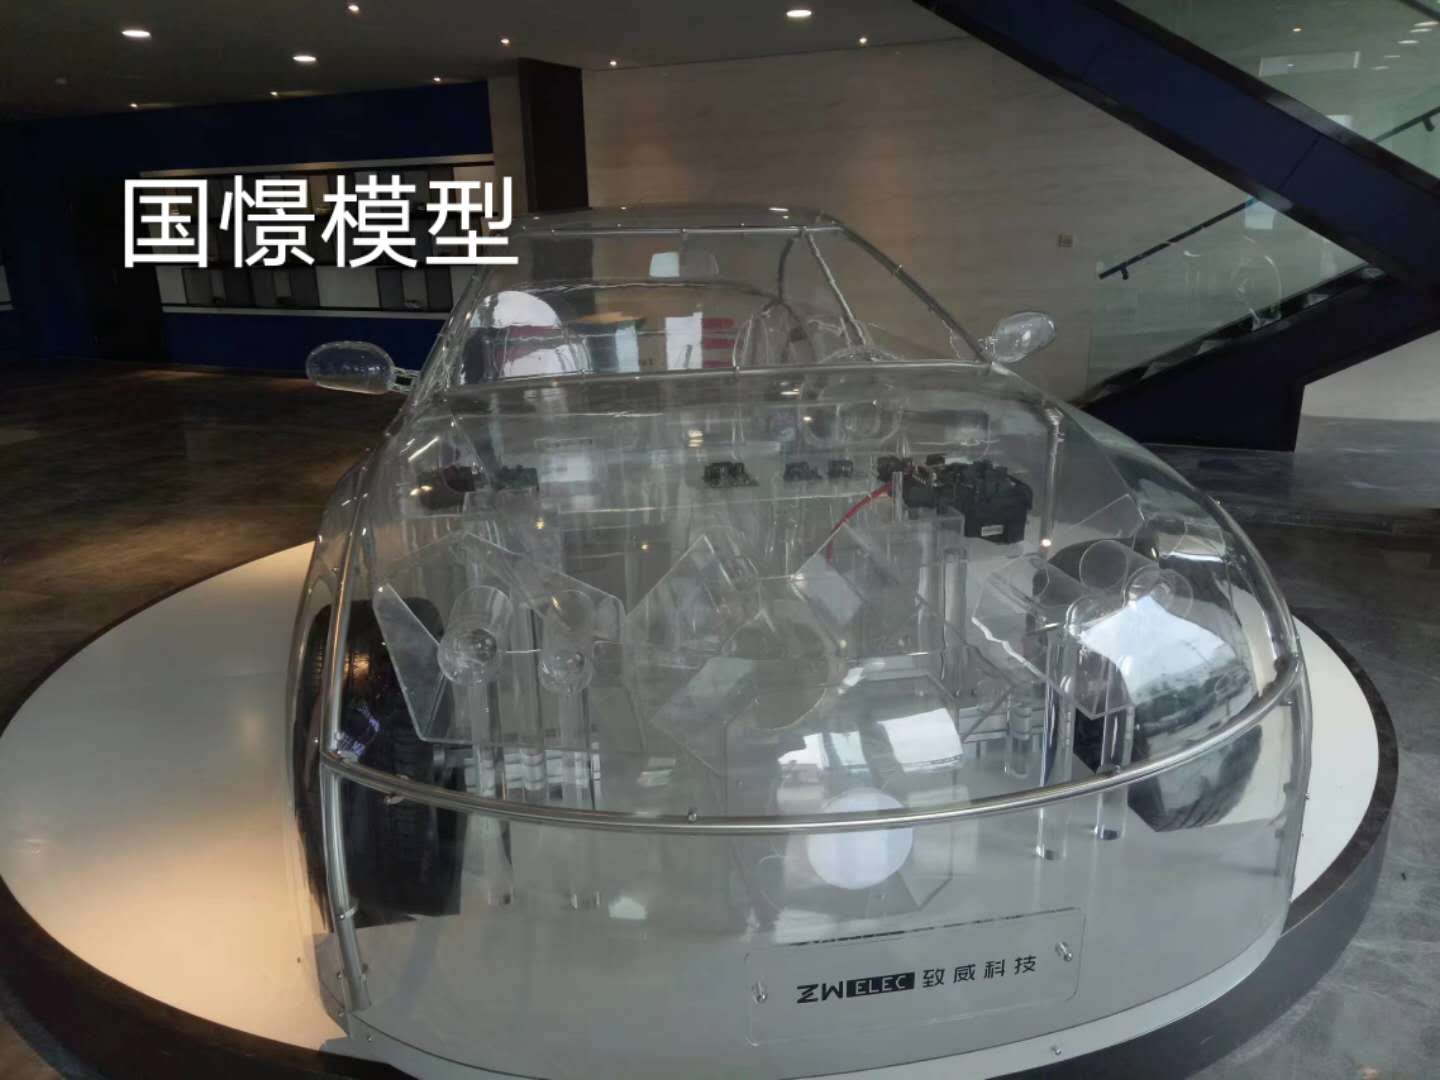 会泽县透明车模型